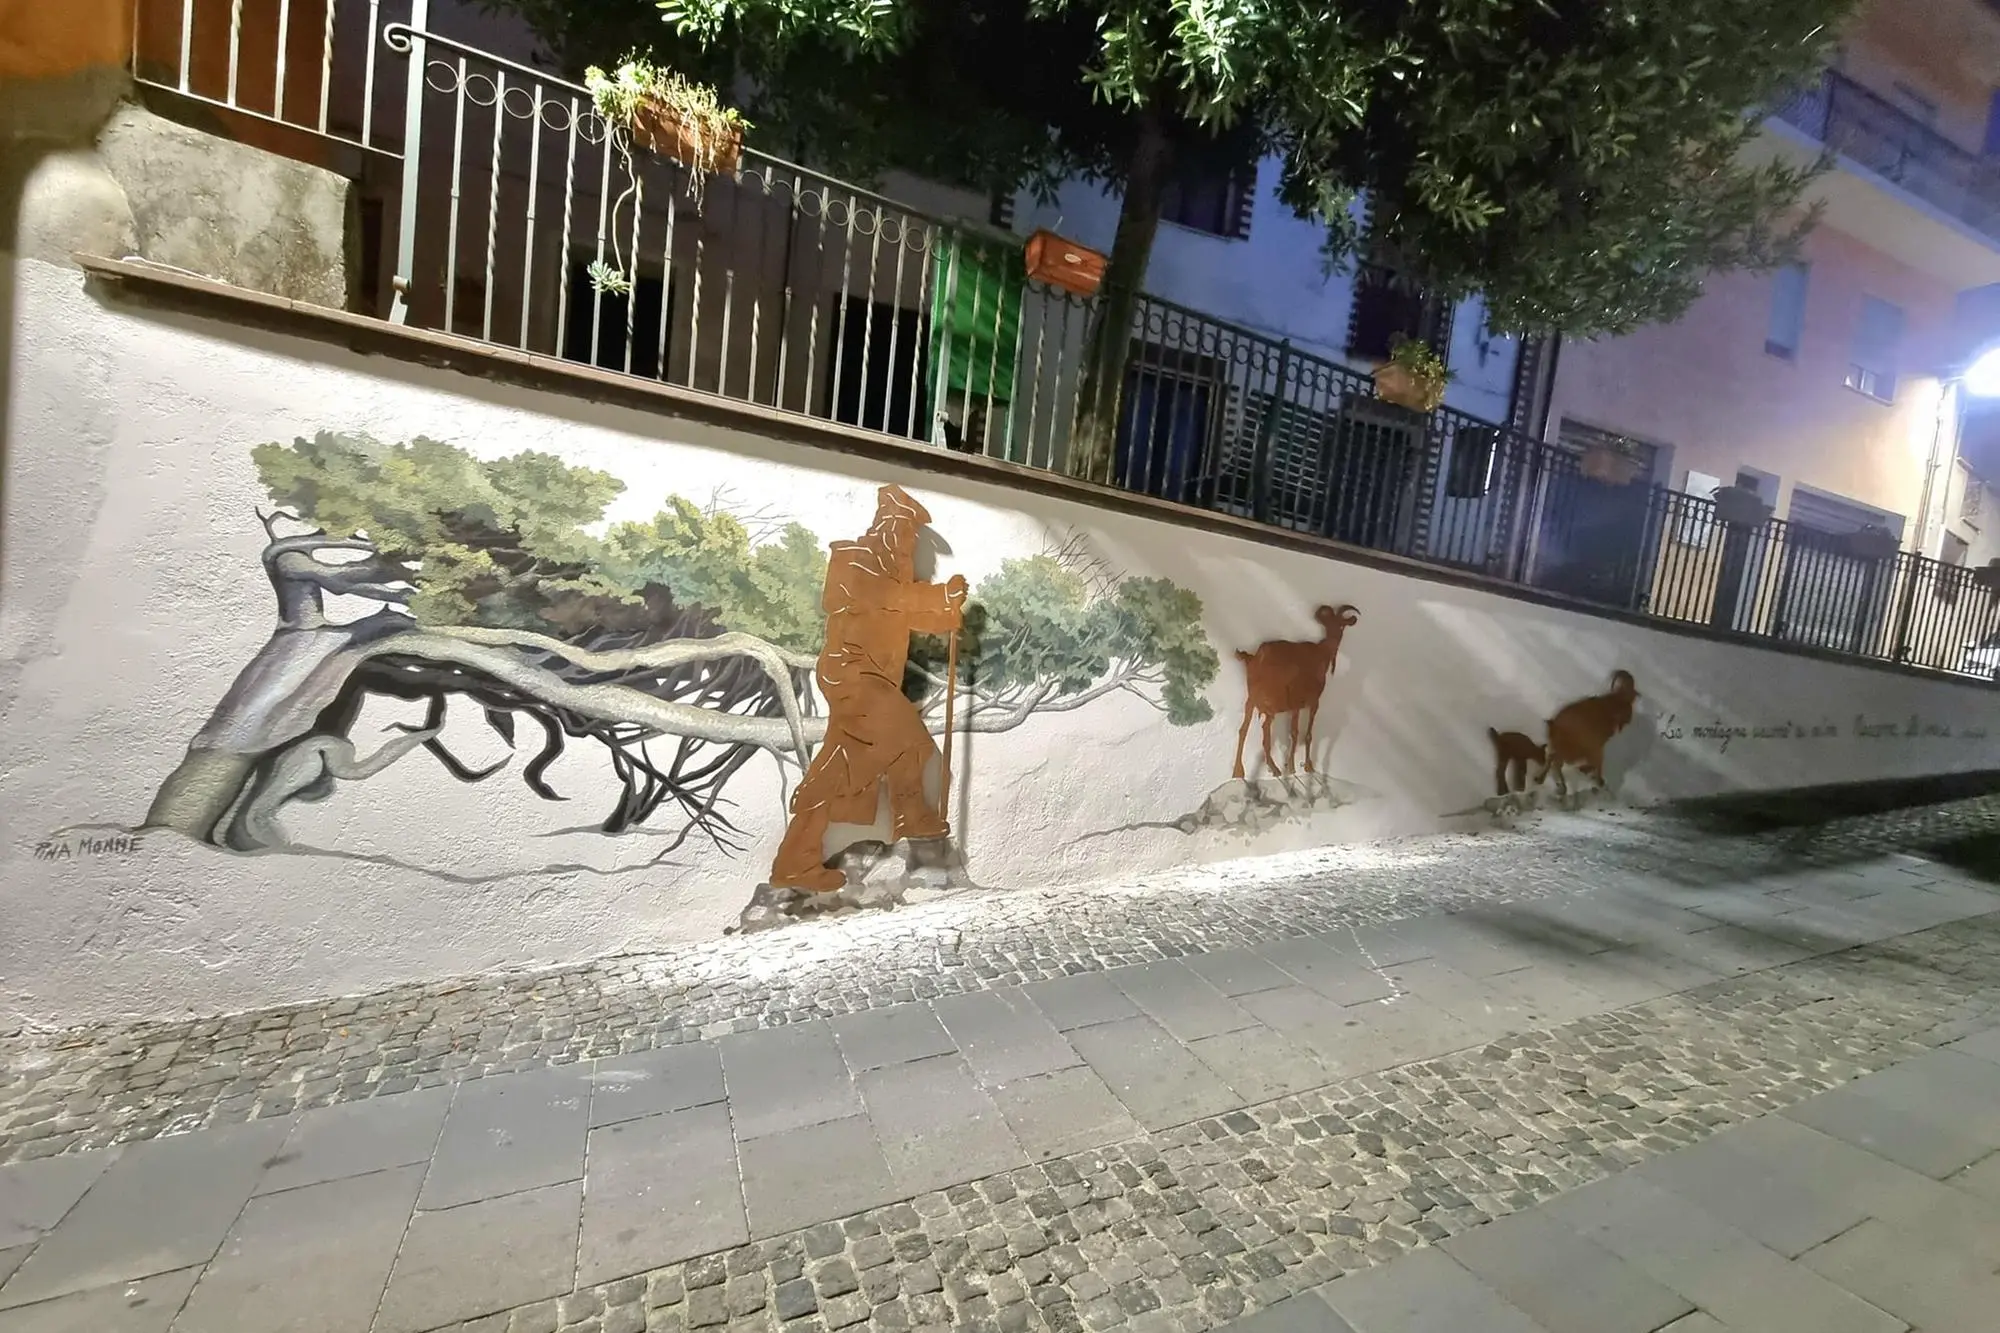 Esterzili, il murale realizzato da Pina Monne in via Vittorio Emanuele